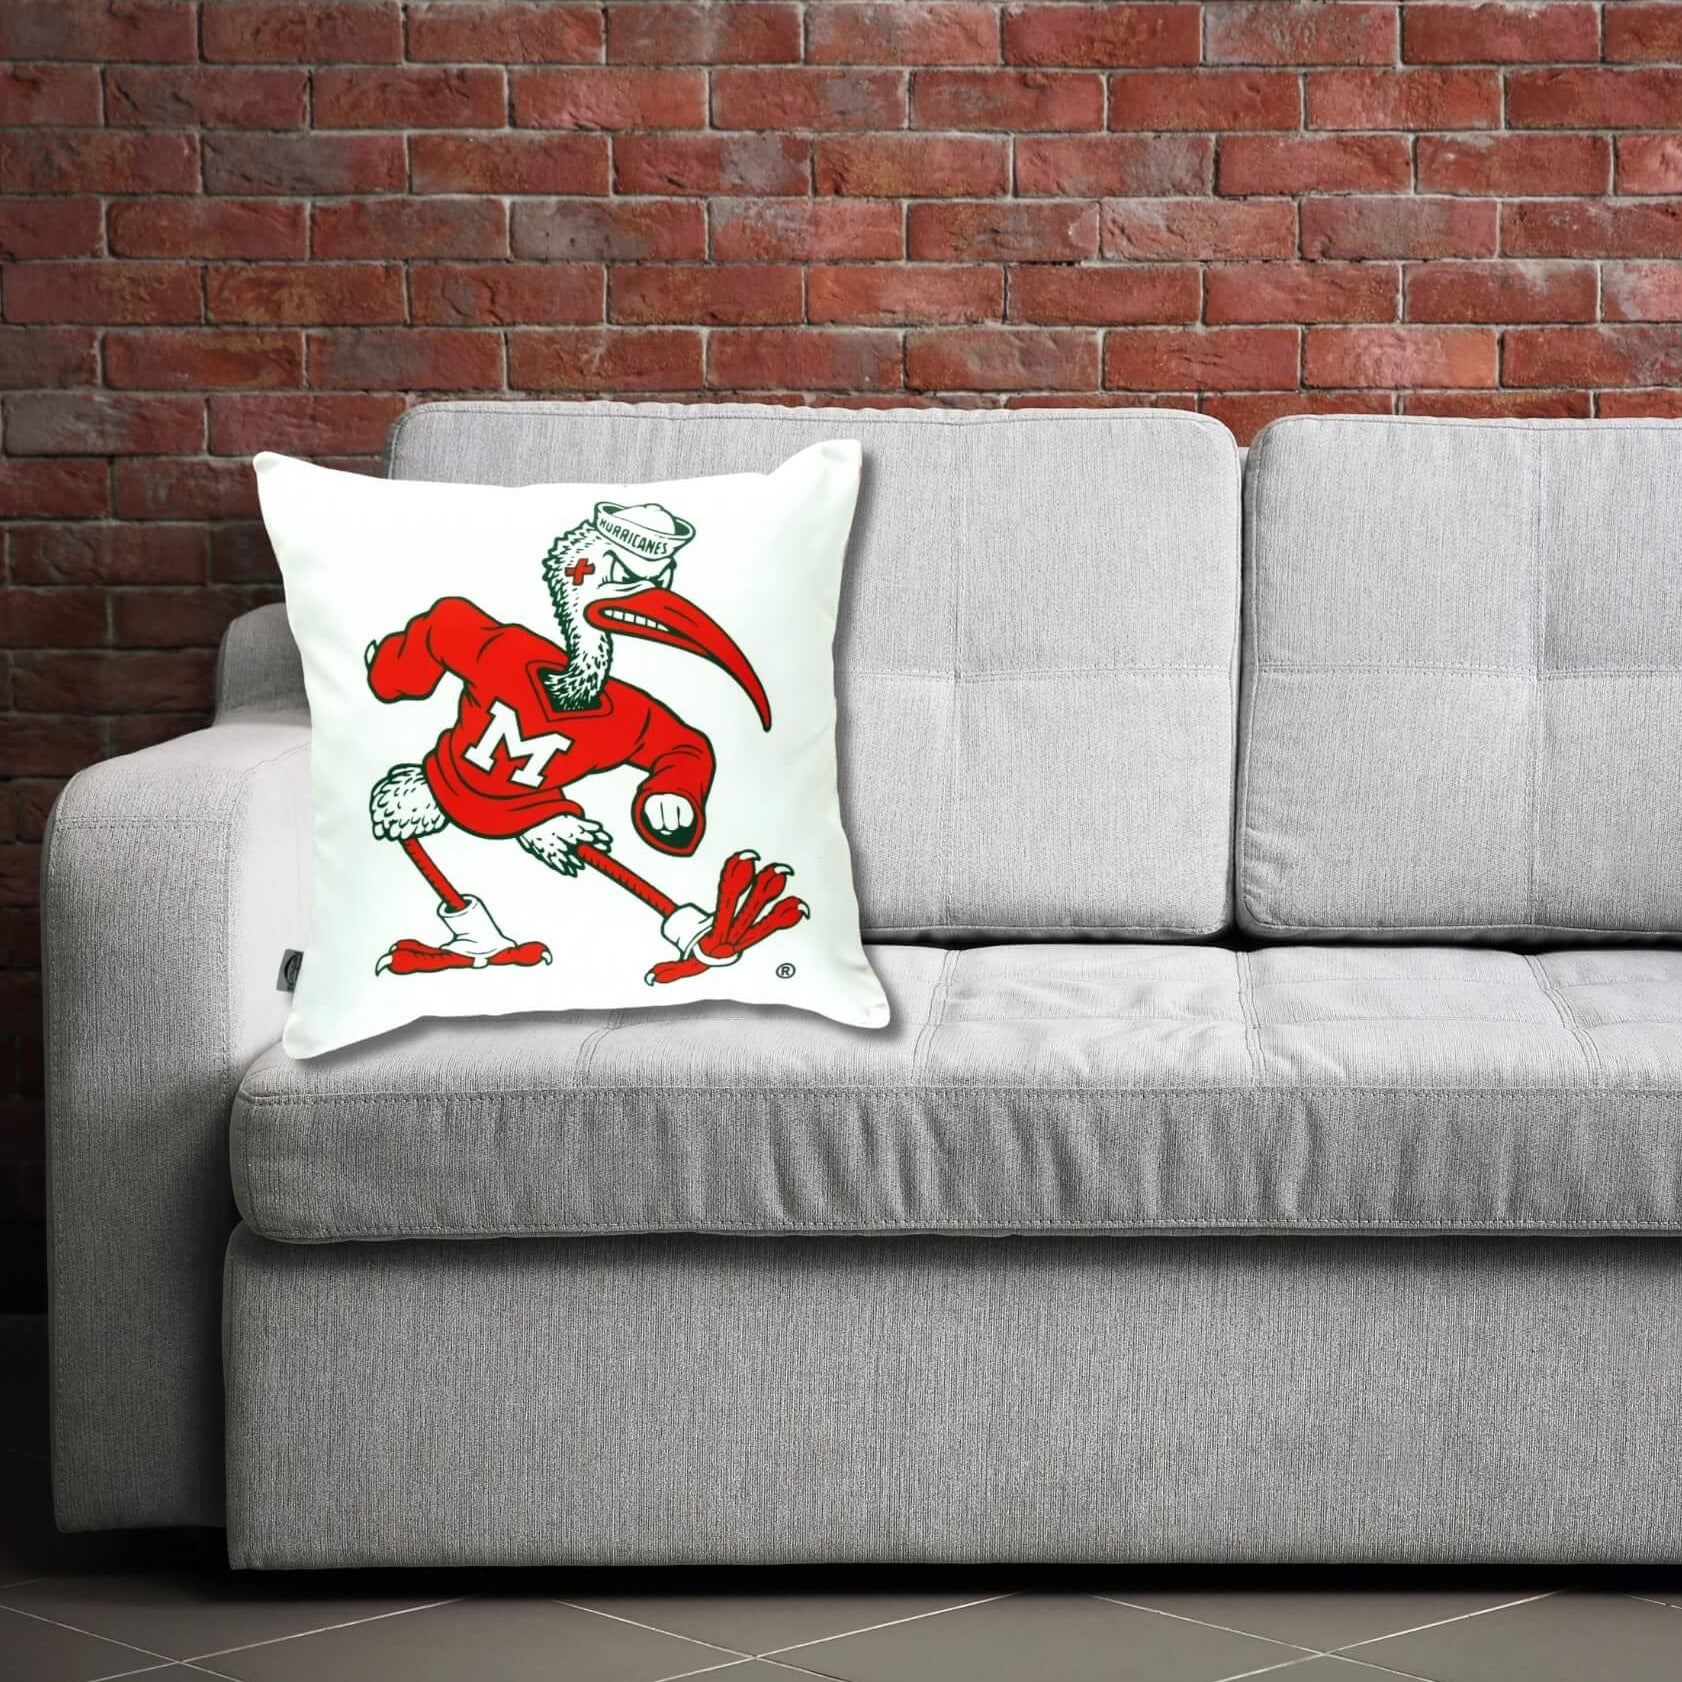 Miami hurricanes Ibis mascot pillow on a sofa